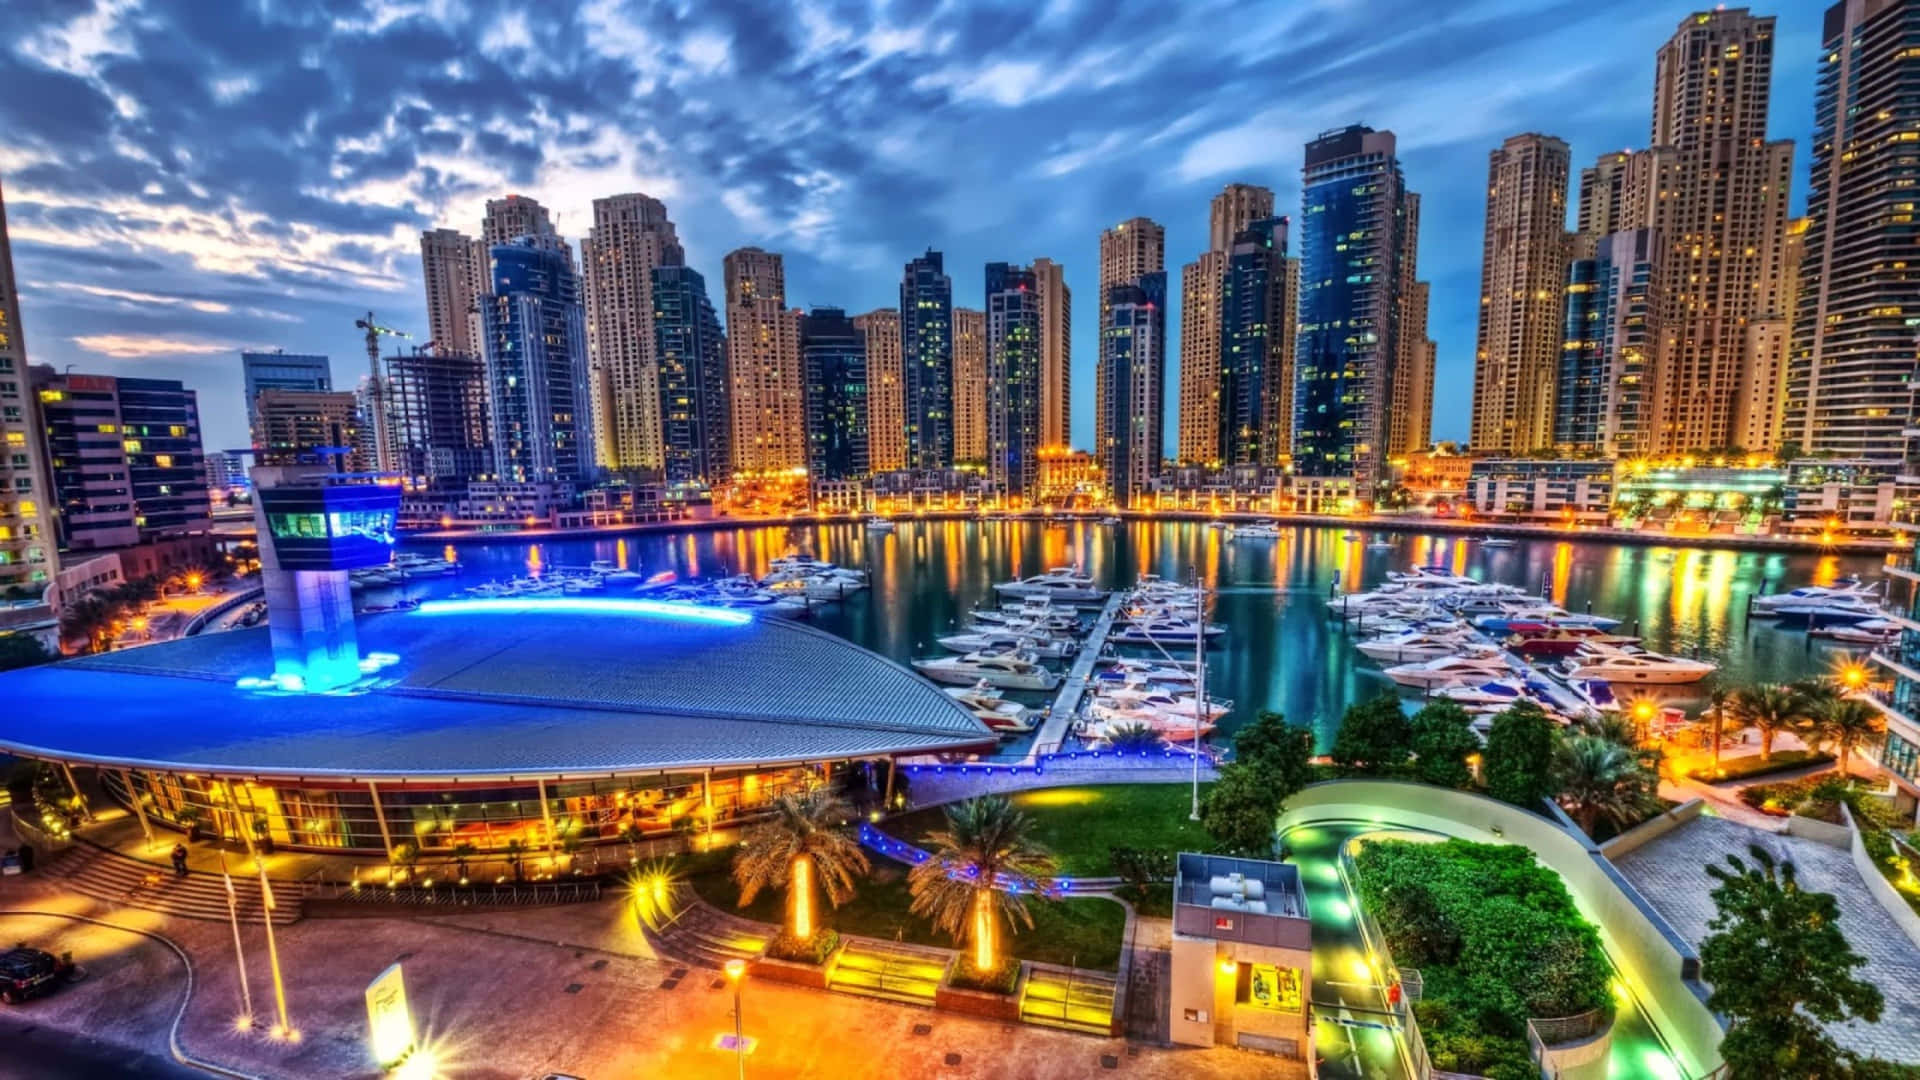 Illuminating the City of Dubai